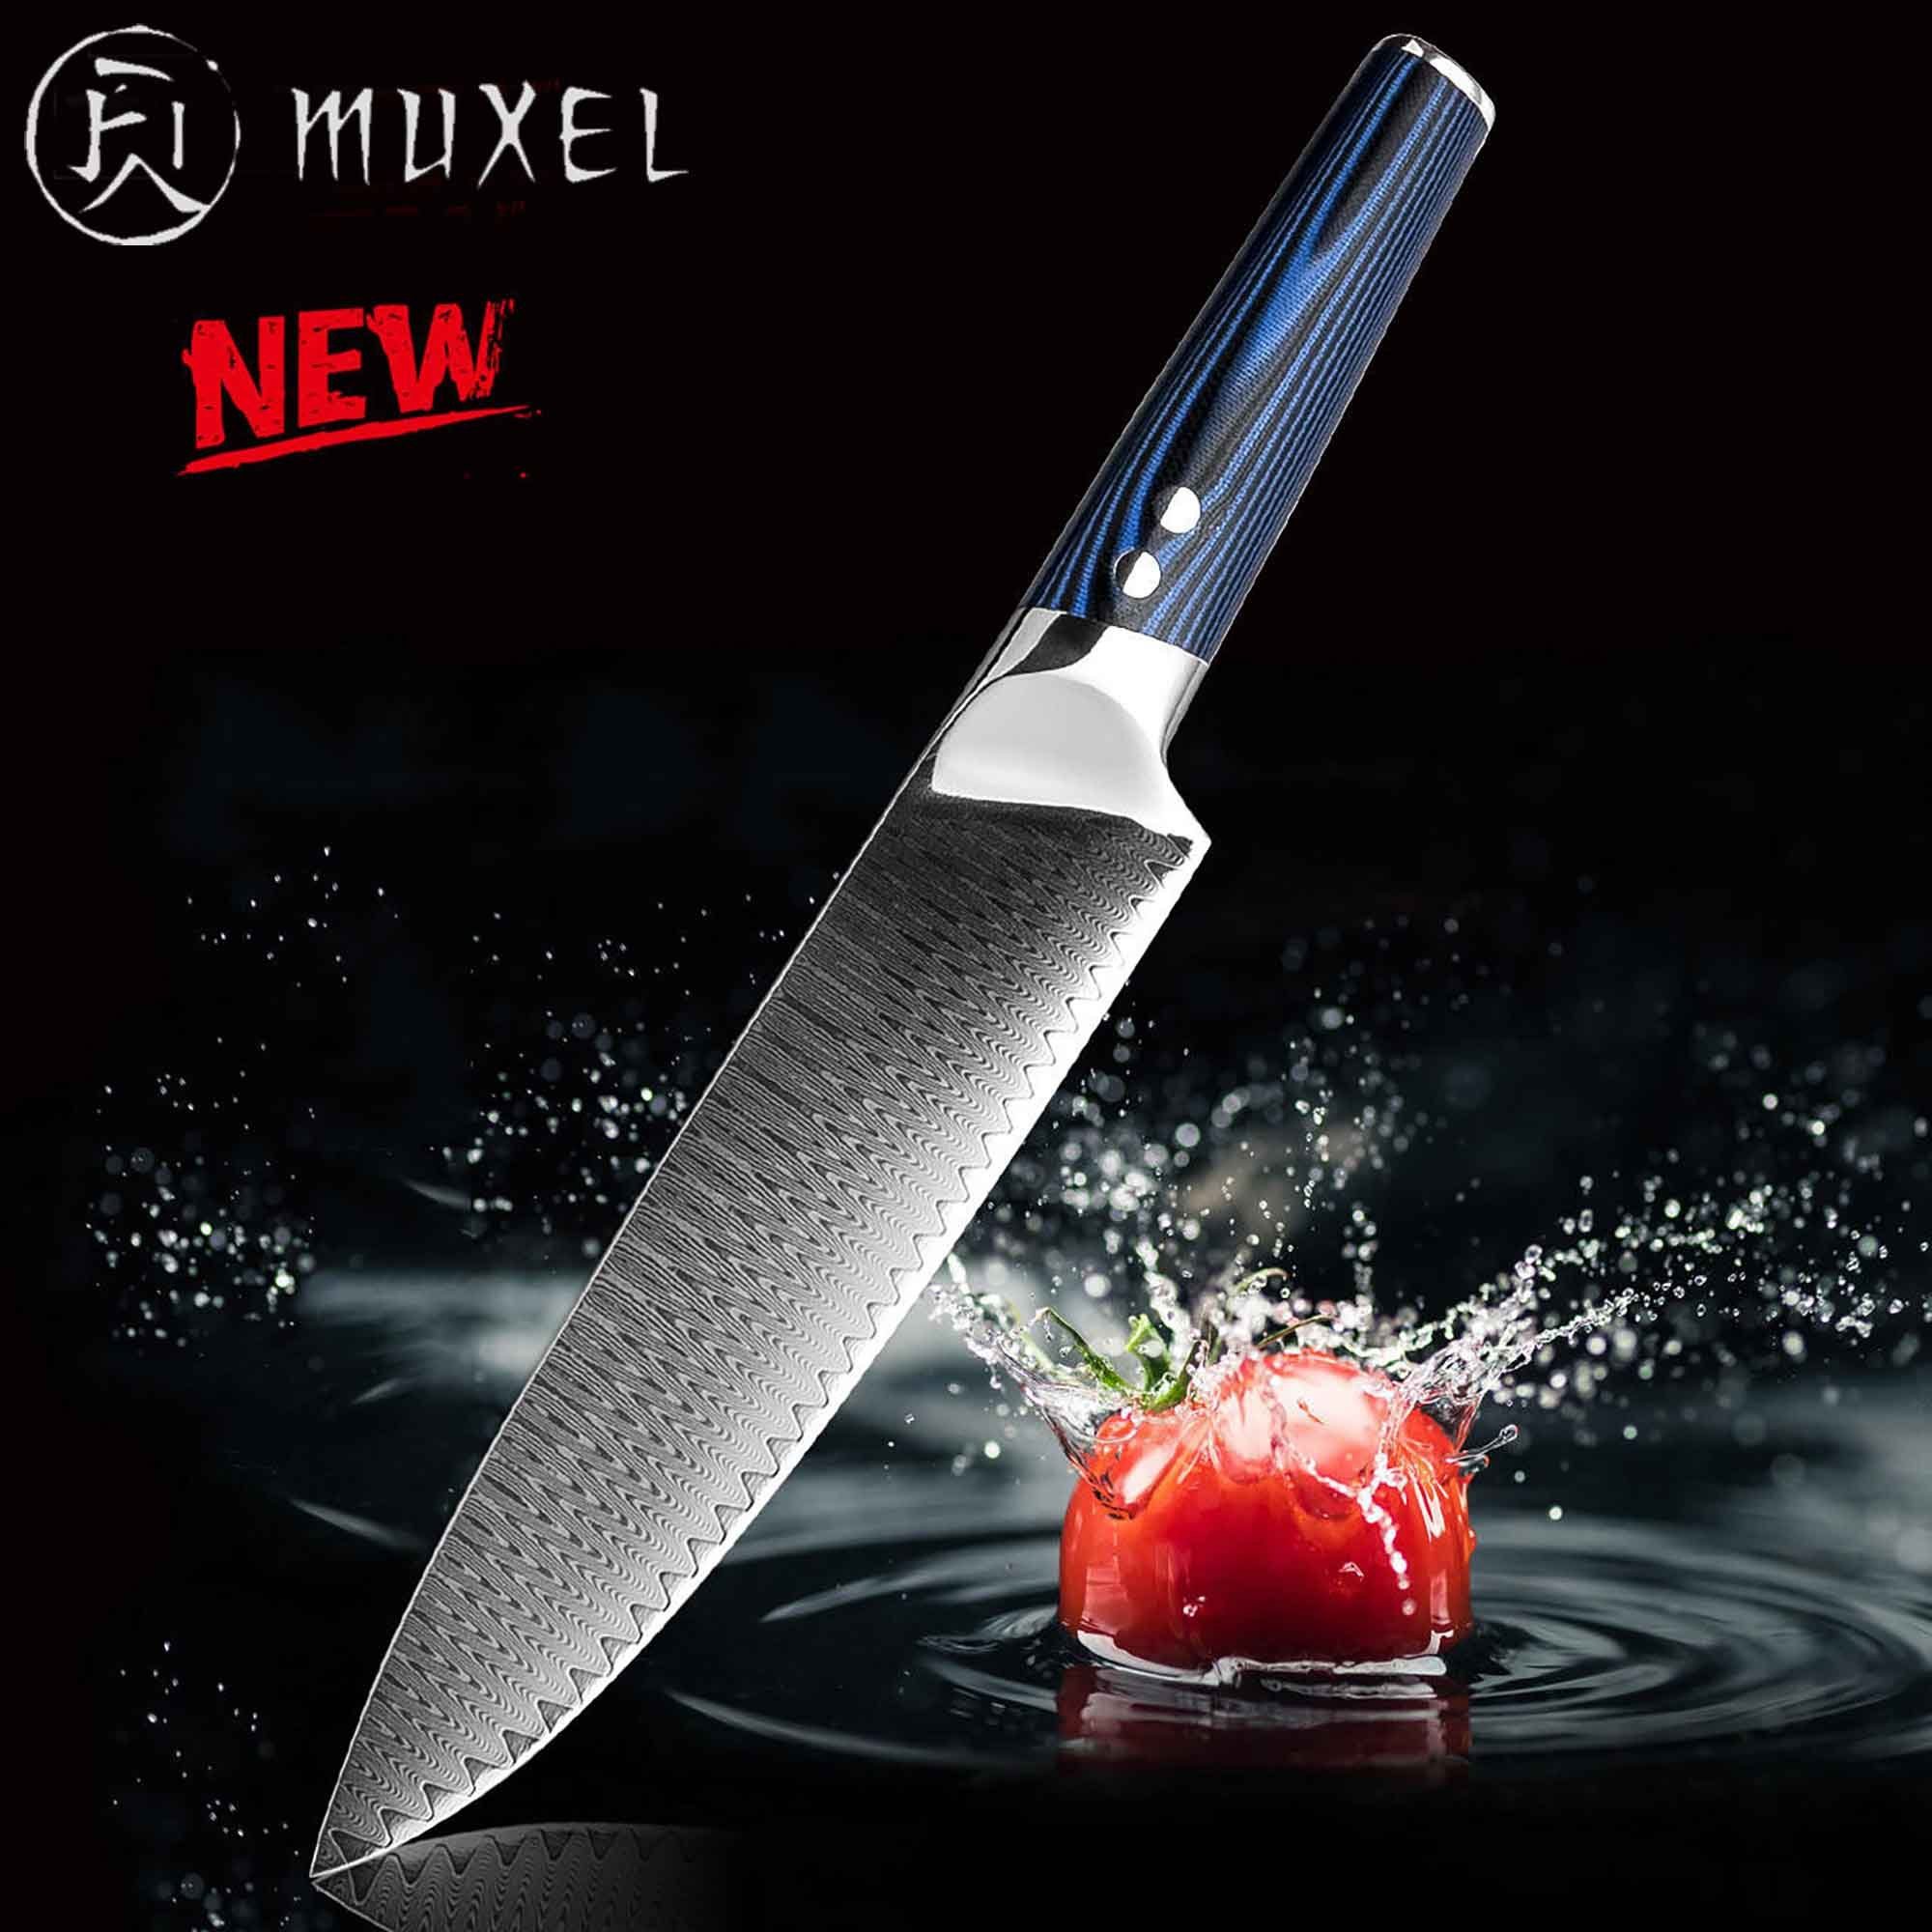 Muxel Kochmesser The Blue Kinfe, das blaue Messer: Kochmesser oder Universalmesser, extra scharf | Kochmesser